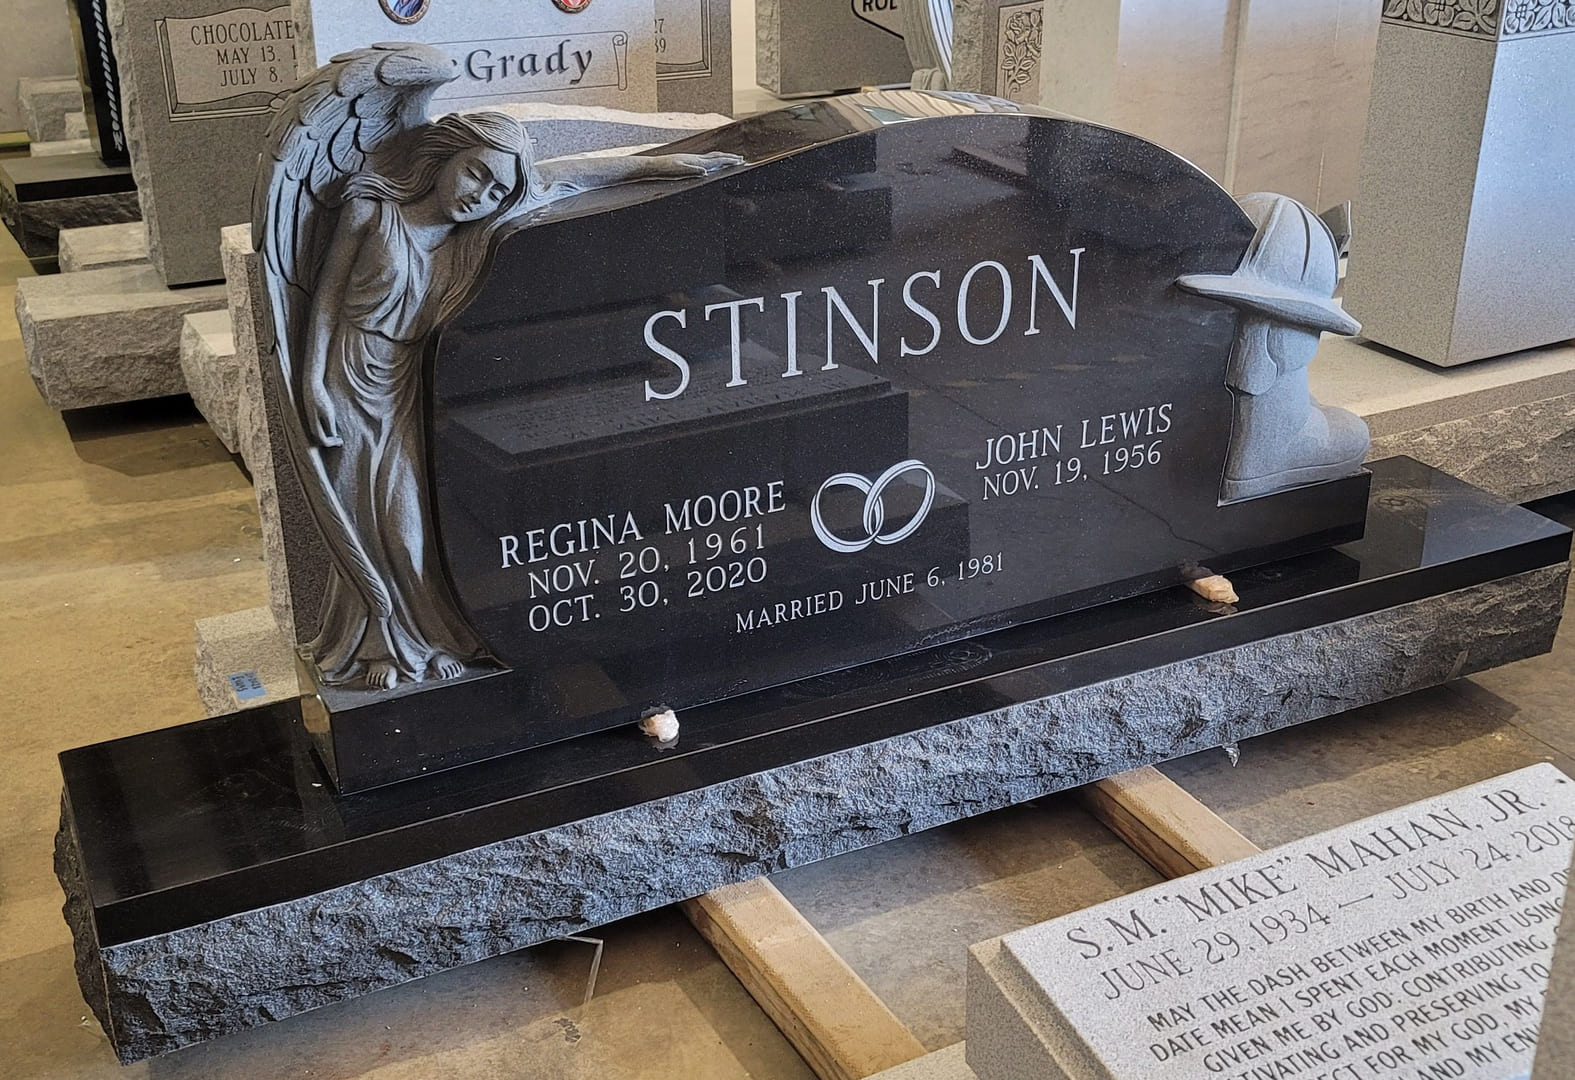 A memorial slab for Regina Moore and John Lewis